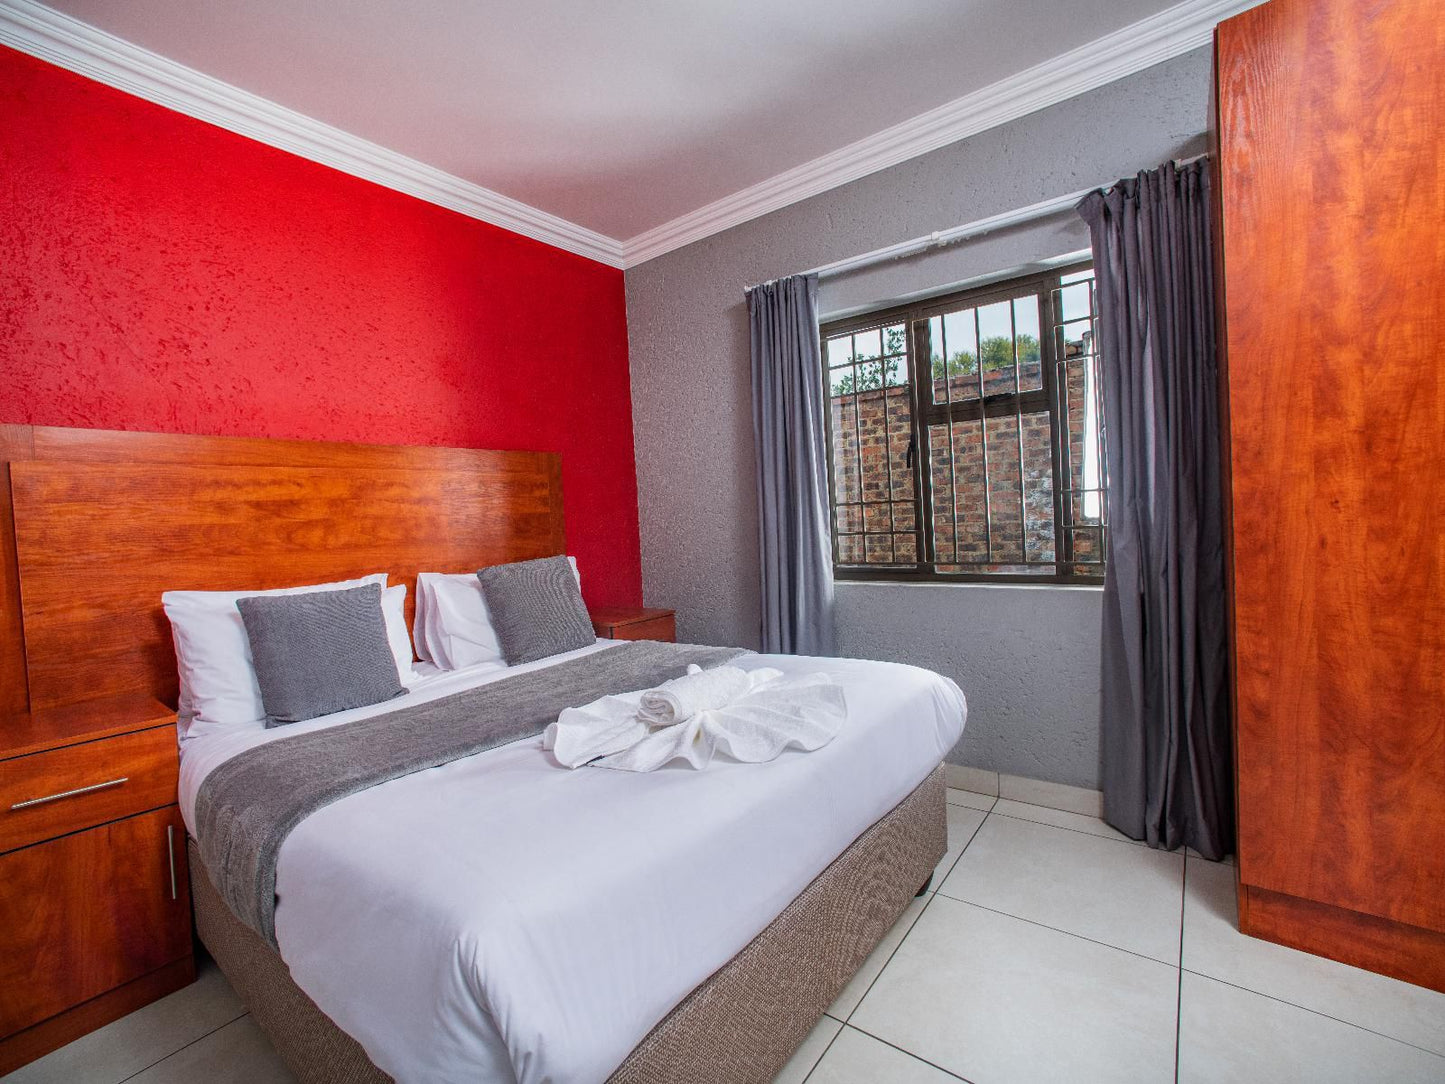 Khayalami Hotels Emalahleni Riverview Witbank Emalahleni Mpumalanga South Africa Bedroom